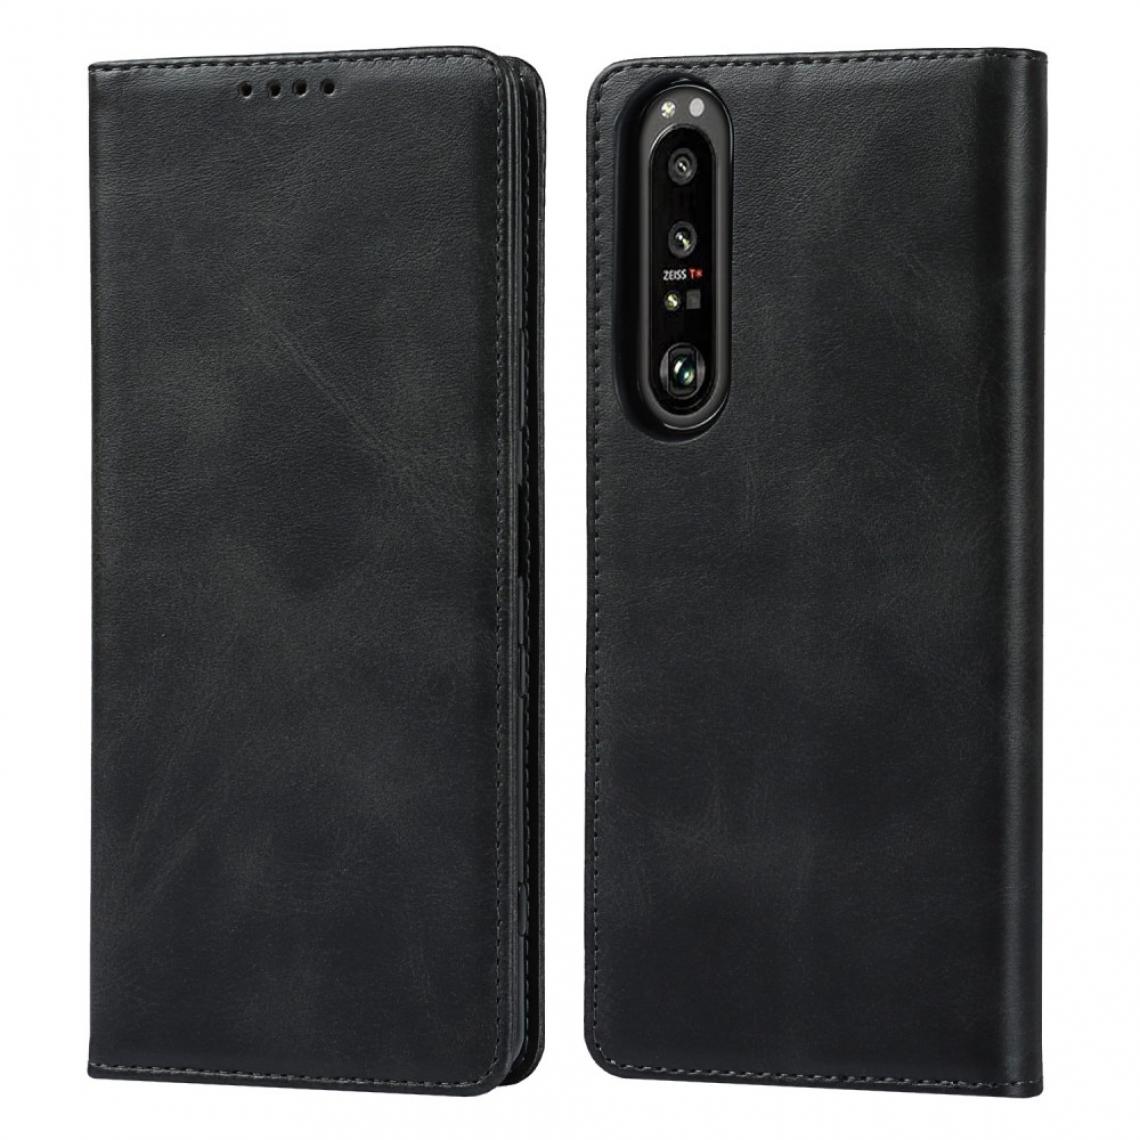 Other - Etui en PU Auto-absorbé avec support noir pour votre Sony Xperia 1 III - Coque, étui smartphone